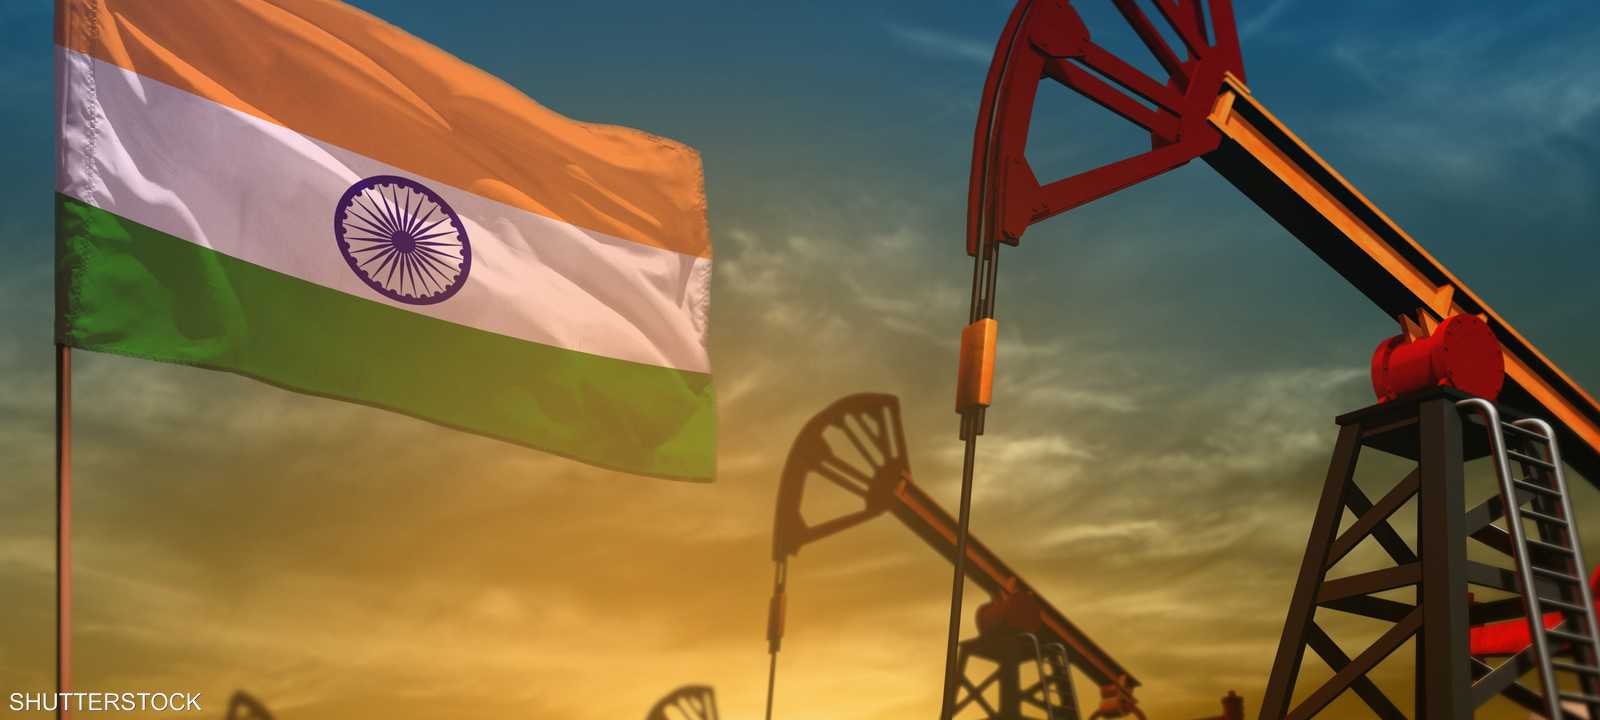 روسيا تقلص حصة الشرق الأوسط وأوبك في سوق النفط الهندية